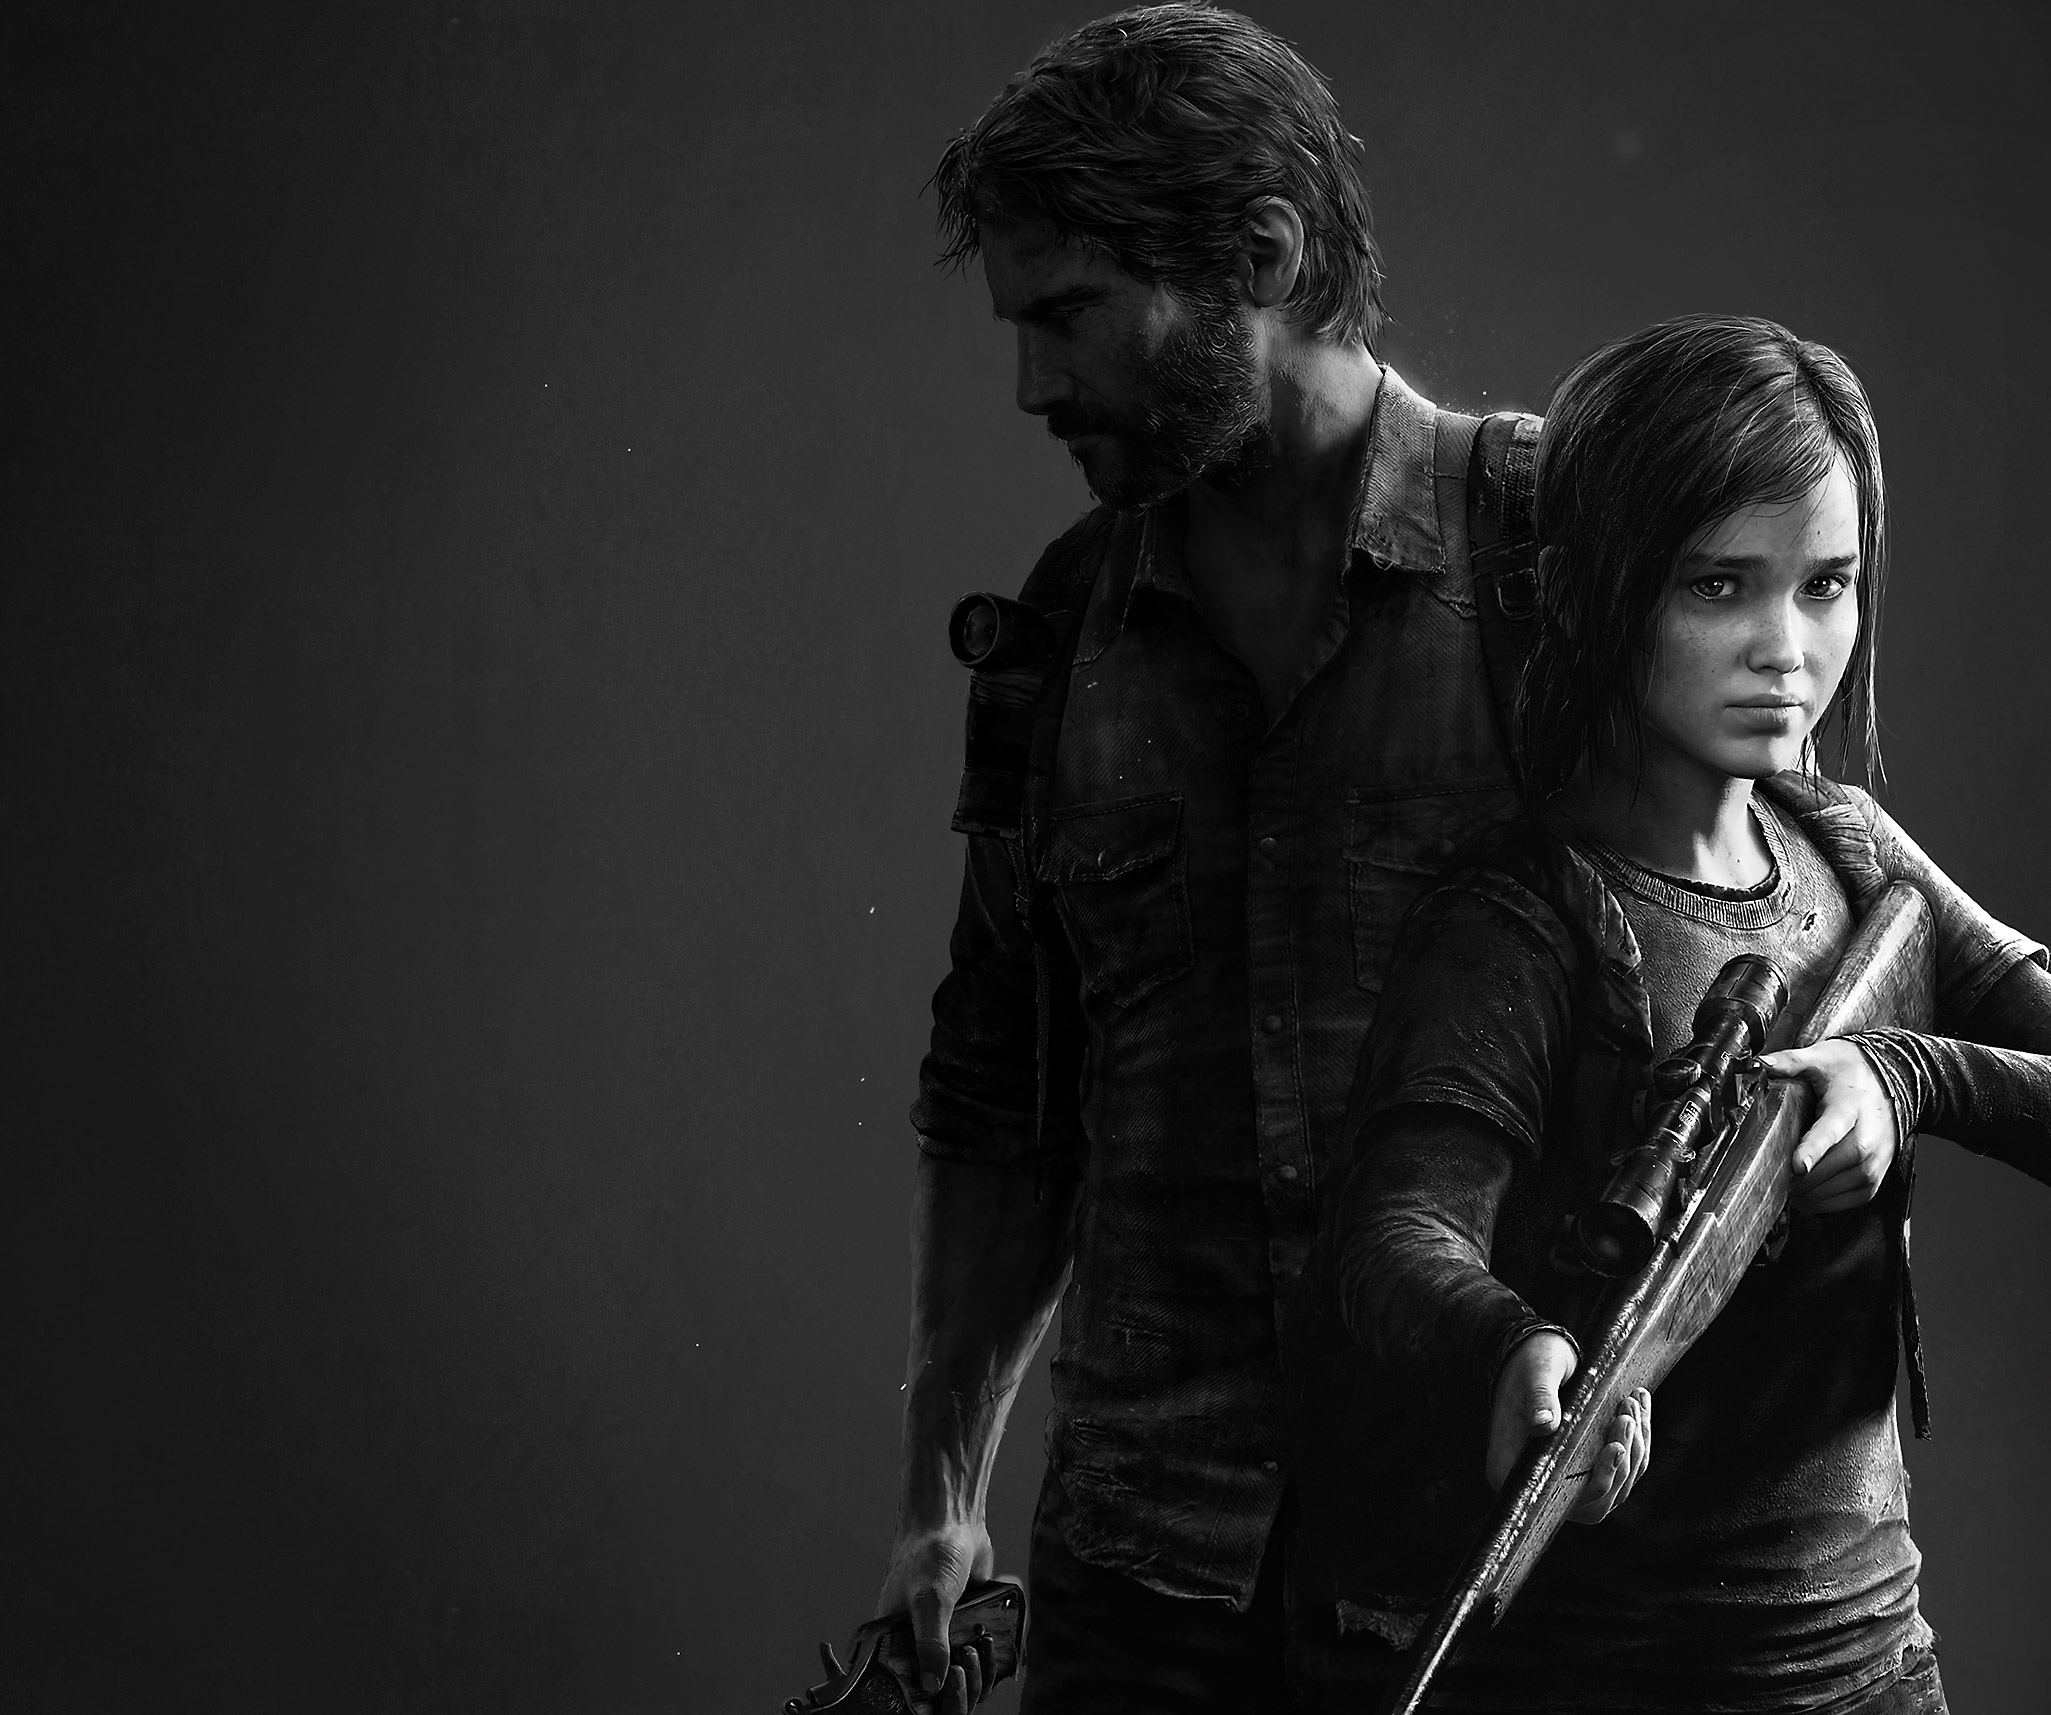 Arte guía de The Last of Us Remastered que presenta una imagen en blanco y negro de los personajes Joel y Ellie.